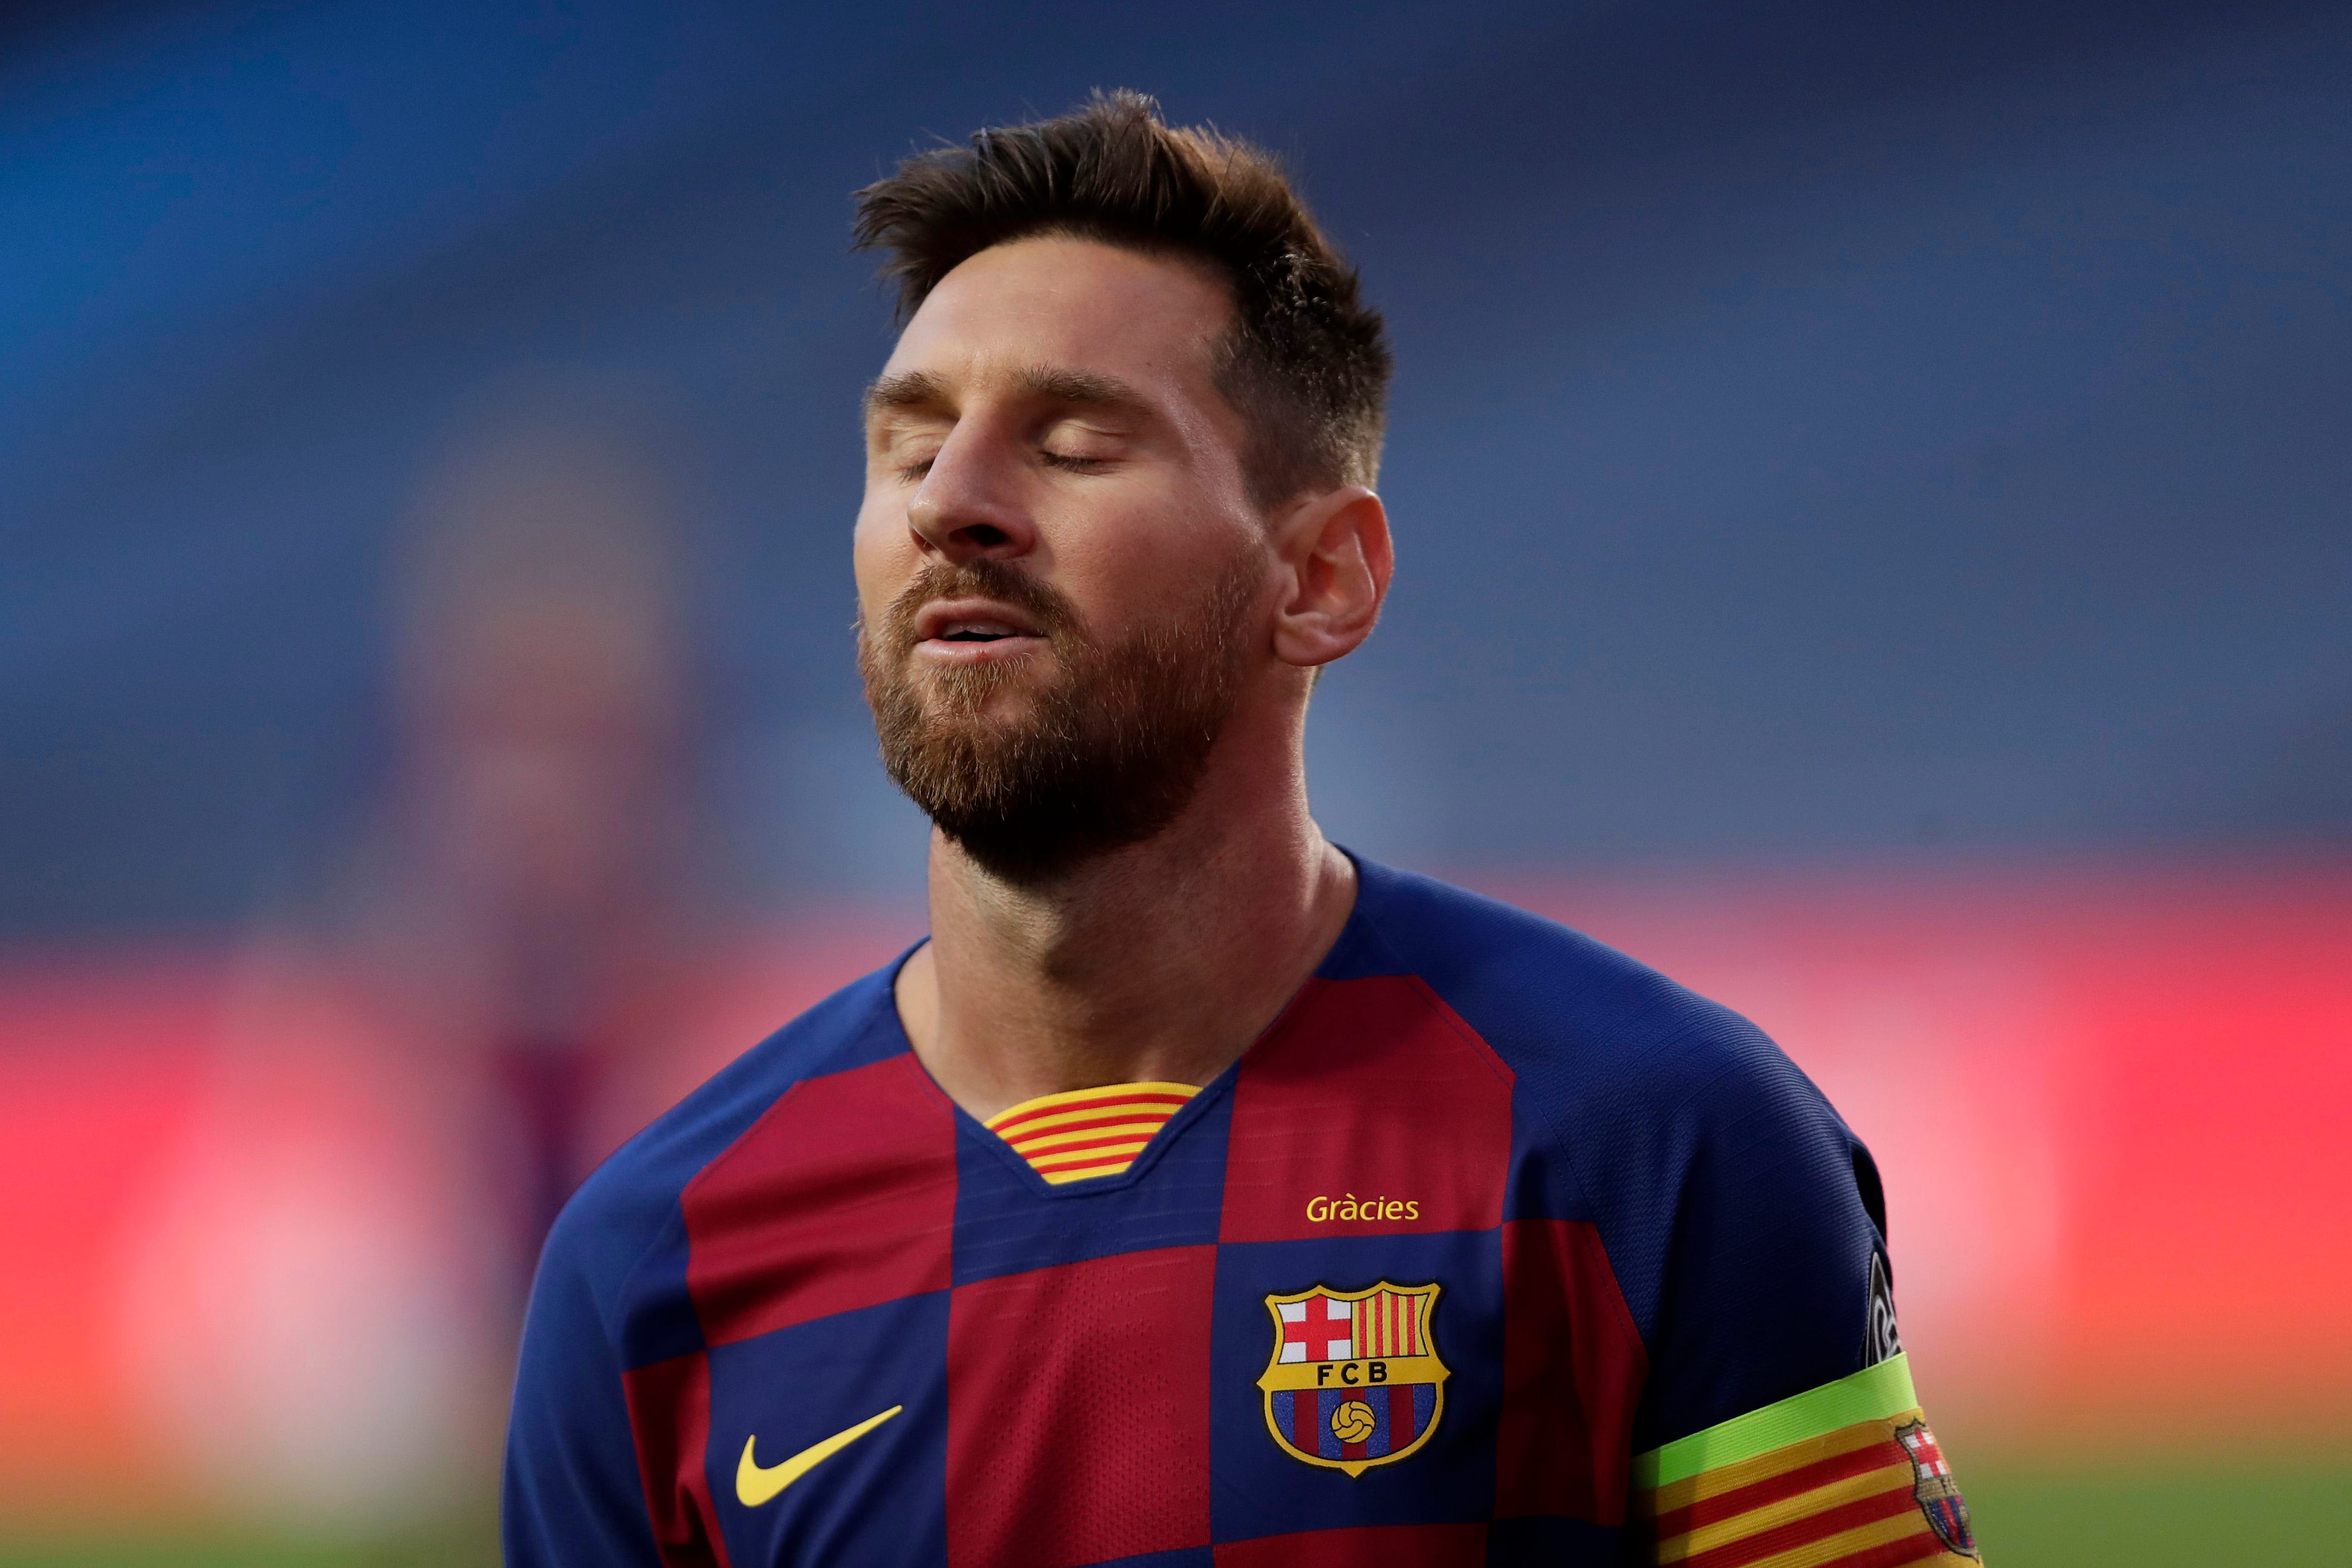 Thay đổi tên Barca nếu Messi rời đi - Sẽ có gì xảy ra nếu huyền thoại Lionel Messi rời khỏi Barcelona? Cùng xem qua hình ảnh liên quan đến câu hỏi này và tìm hiểu về một khả năng không hề xa lạ trong tương lai.